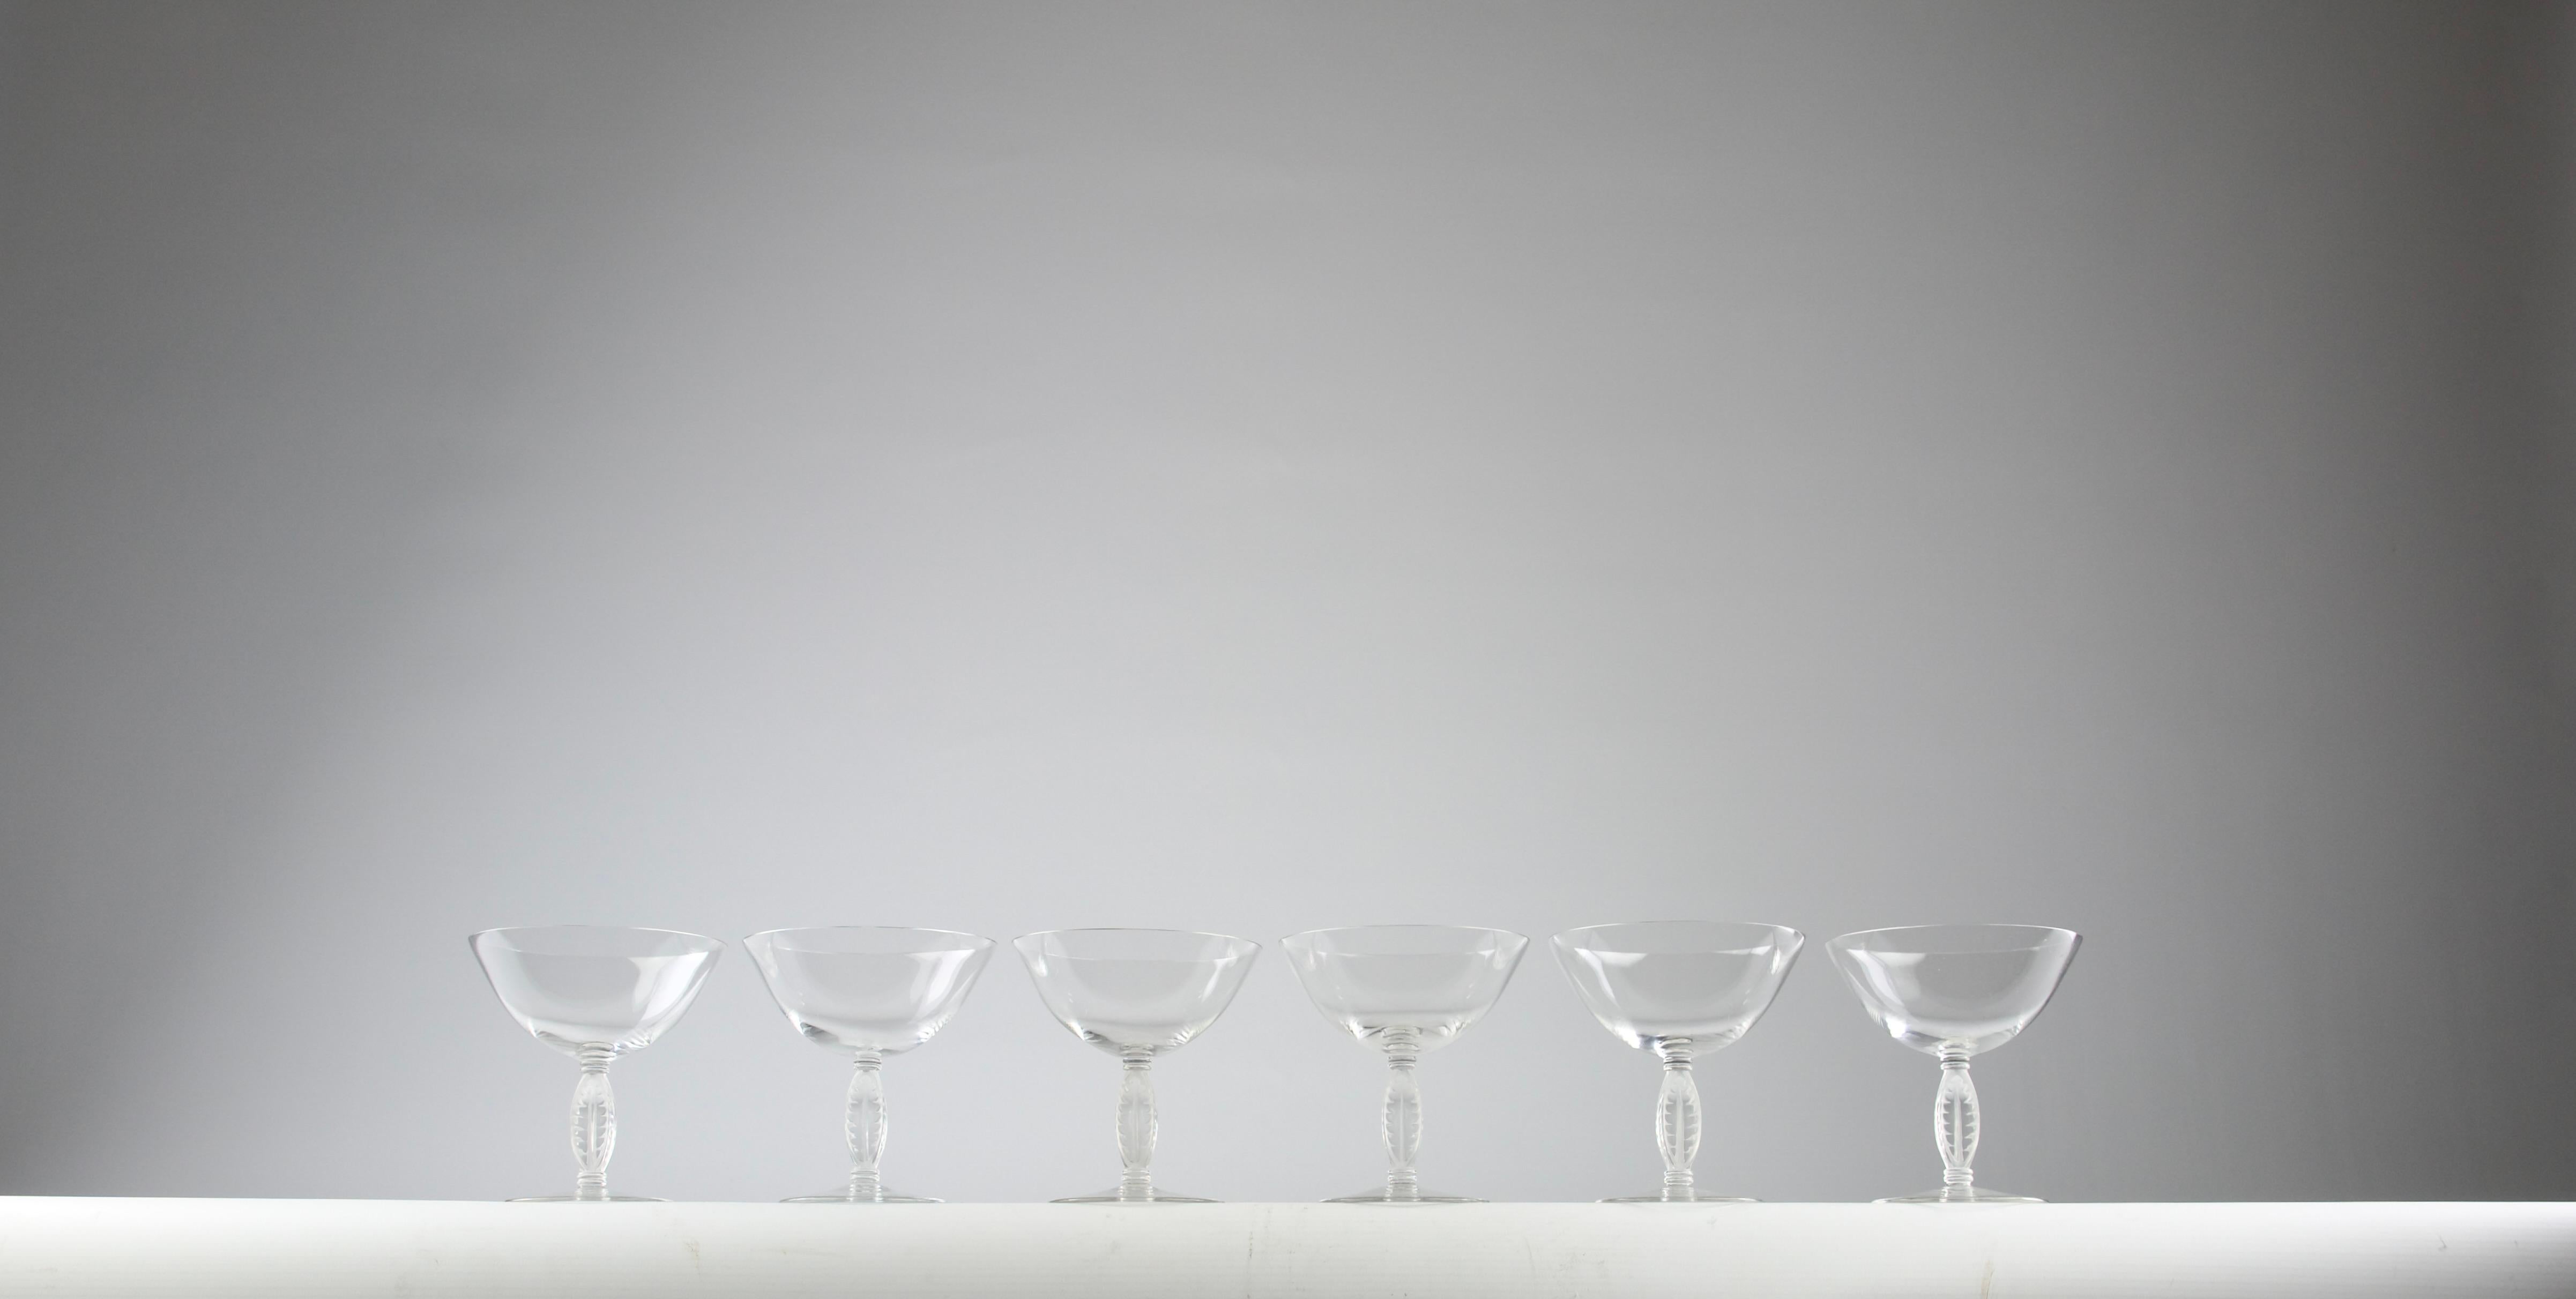 Magnifique ensemble de six bouteilles de champagne Lalique Fontainebleau. D'autres verres à vin de la même collection sont disponibles dans la boutique.

En très bon état.

Dimensions en cm ( H x D ) : 11.2 x 10.5

Expédition sécurisée.

Conçu pour